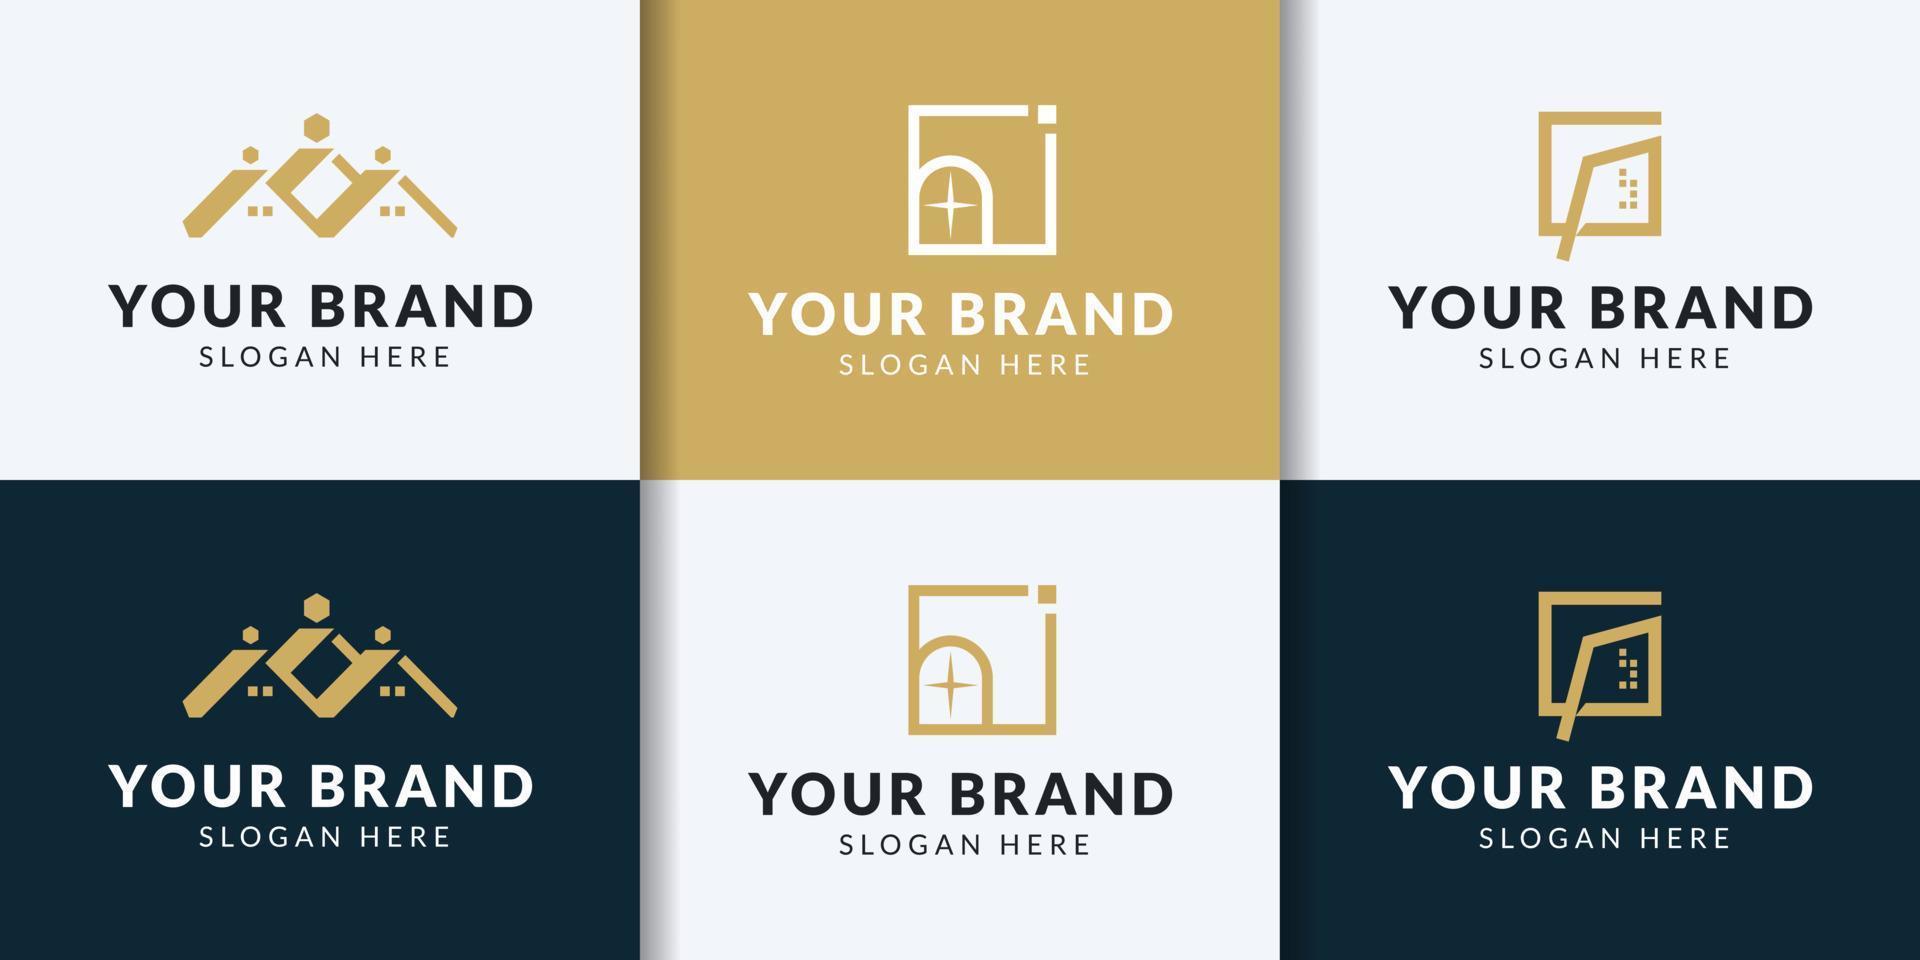 schoon huis logo reeks voor echt landgoed bedrijf vector